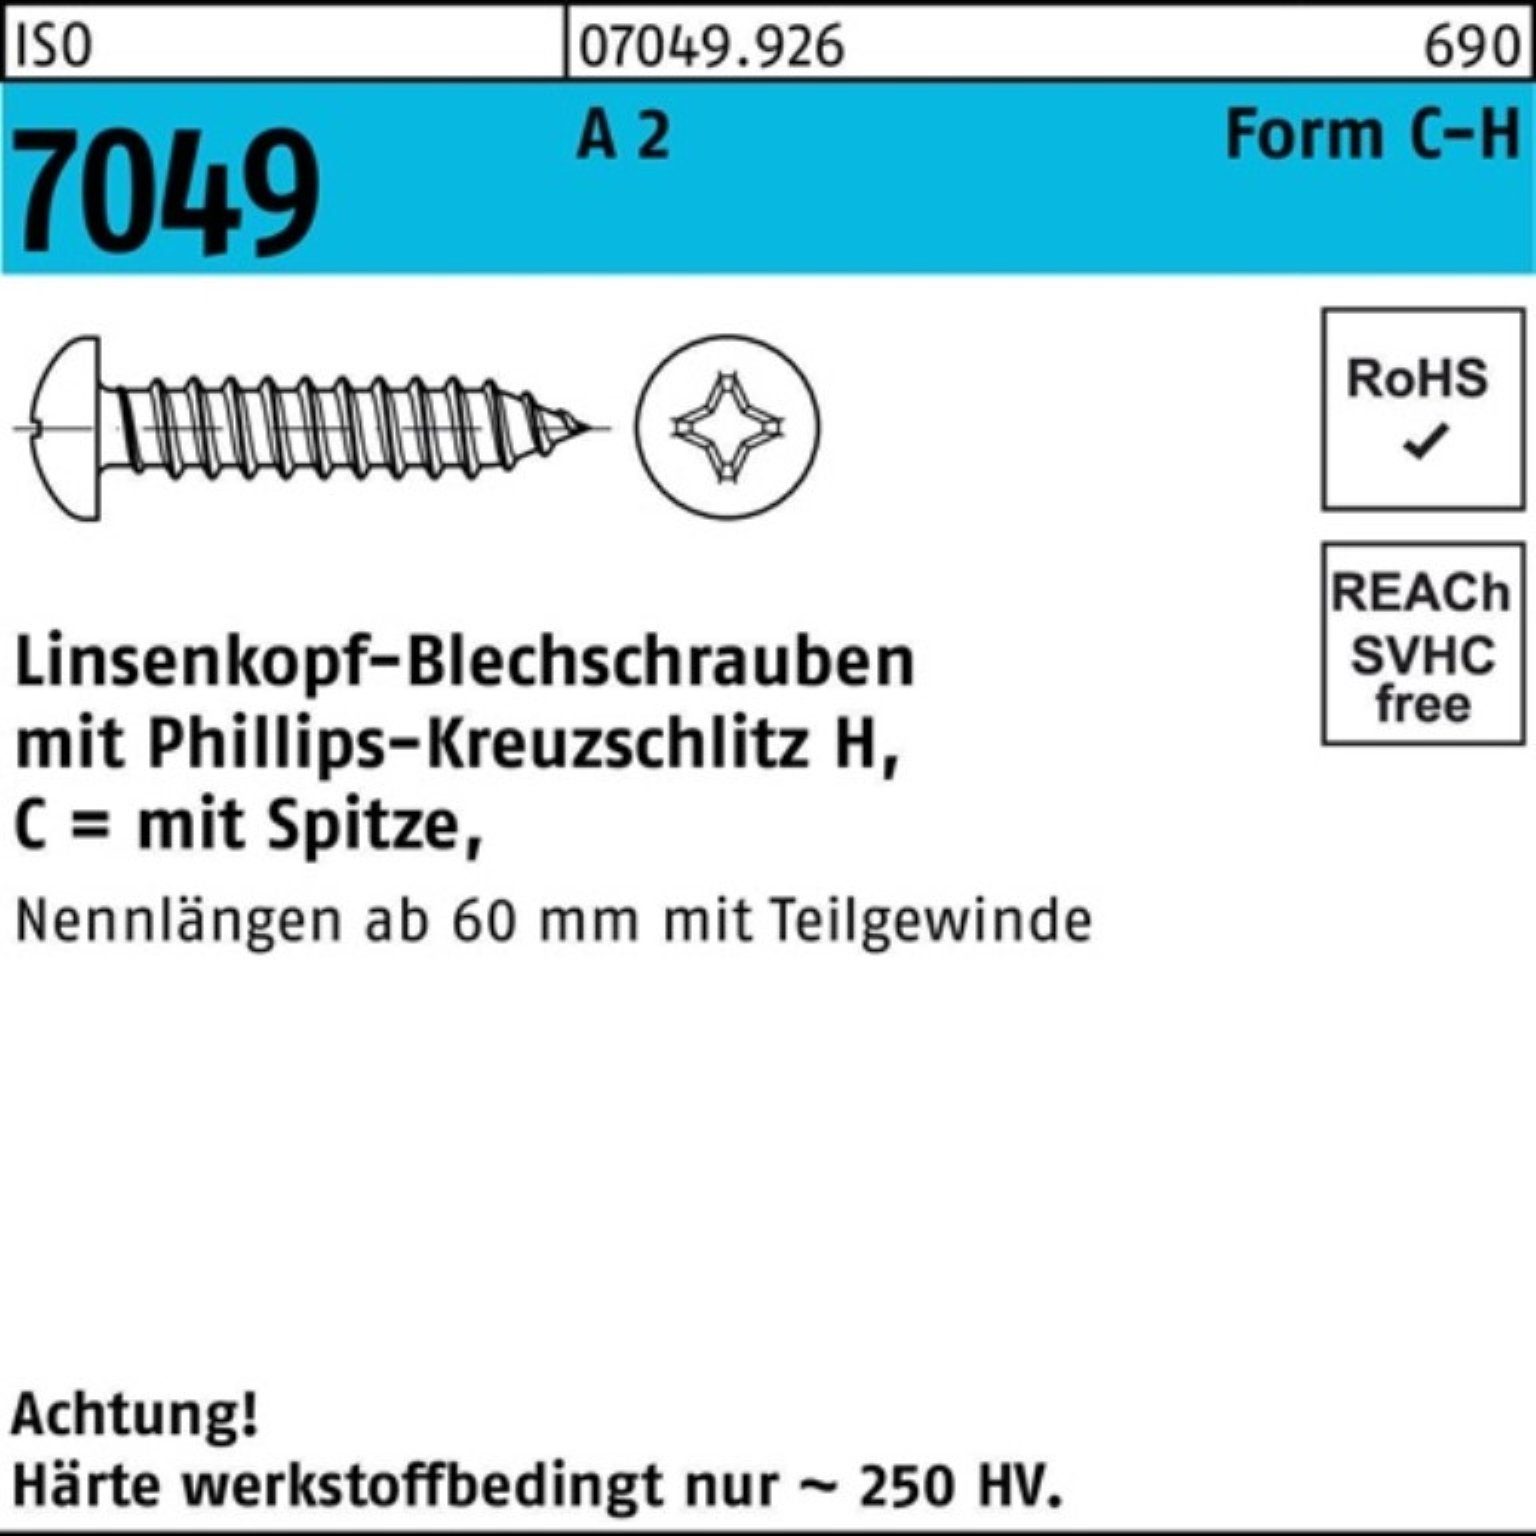 25-H Pack ISO Spitze/PH Blechschraube LIKO C 100er 100 A 3,5x 7049 S Blechschraube Reyher 2